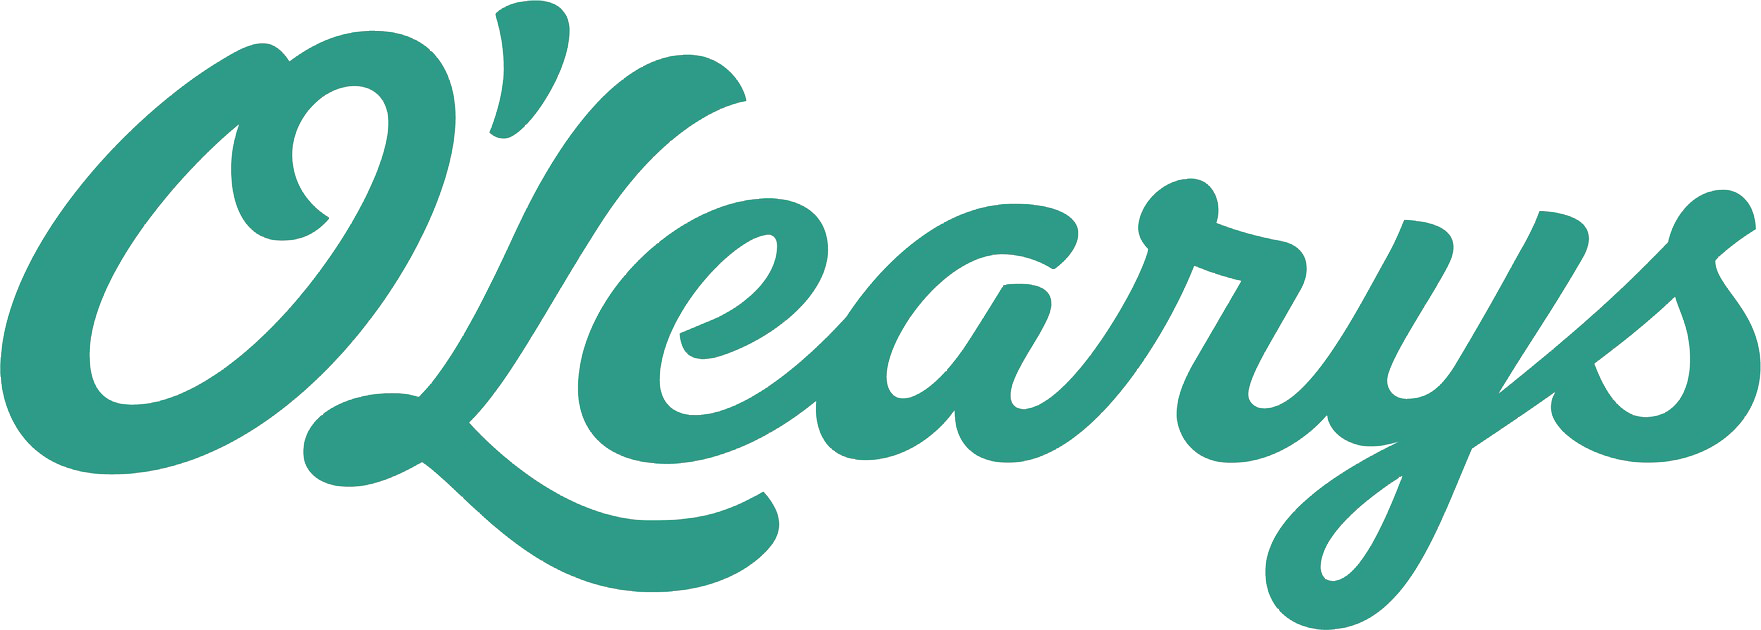 Olearys-logo